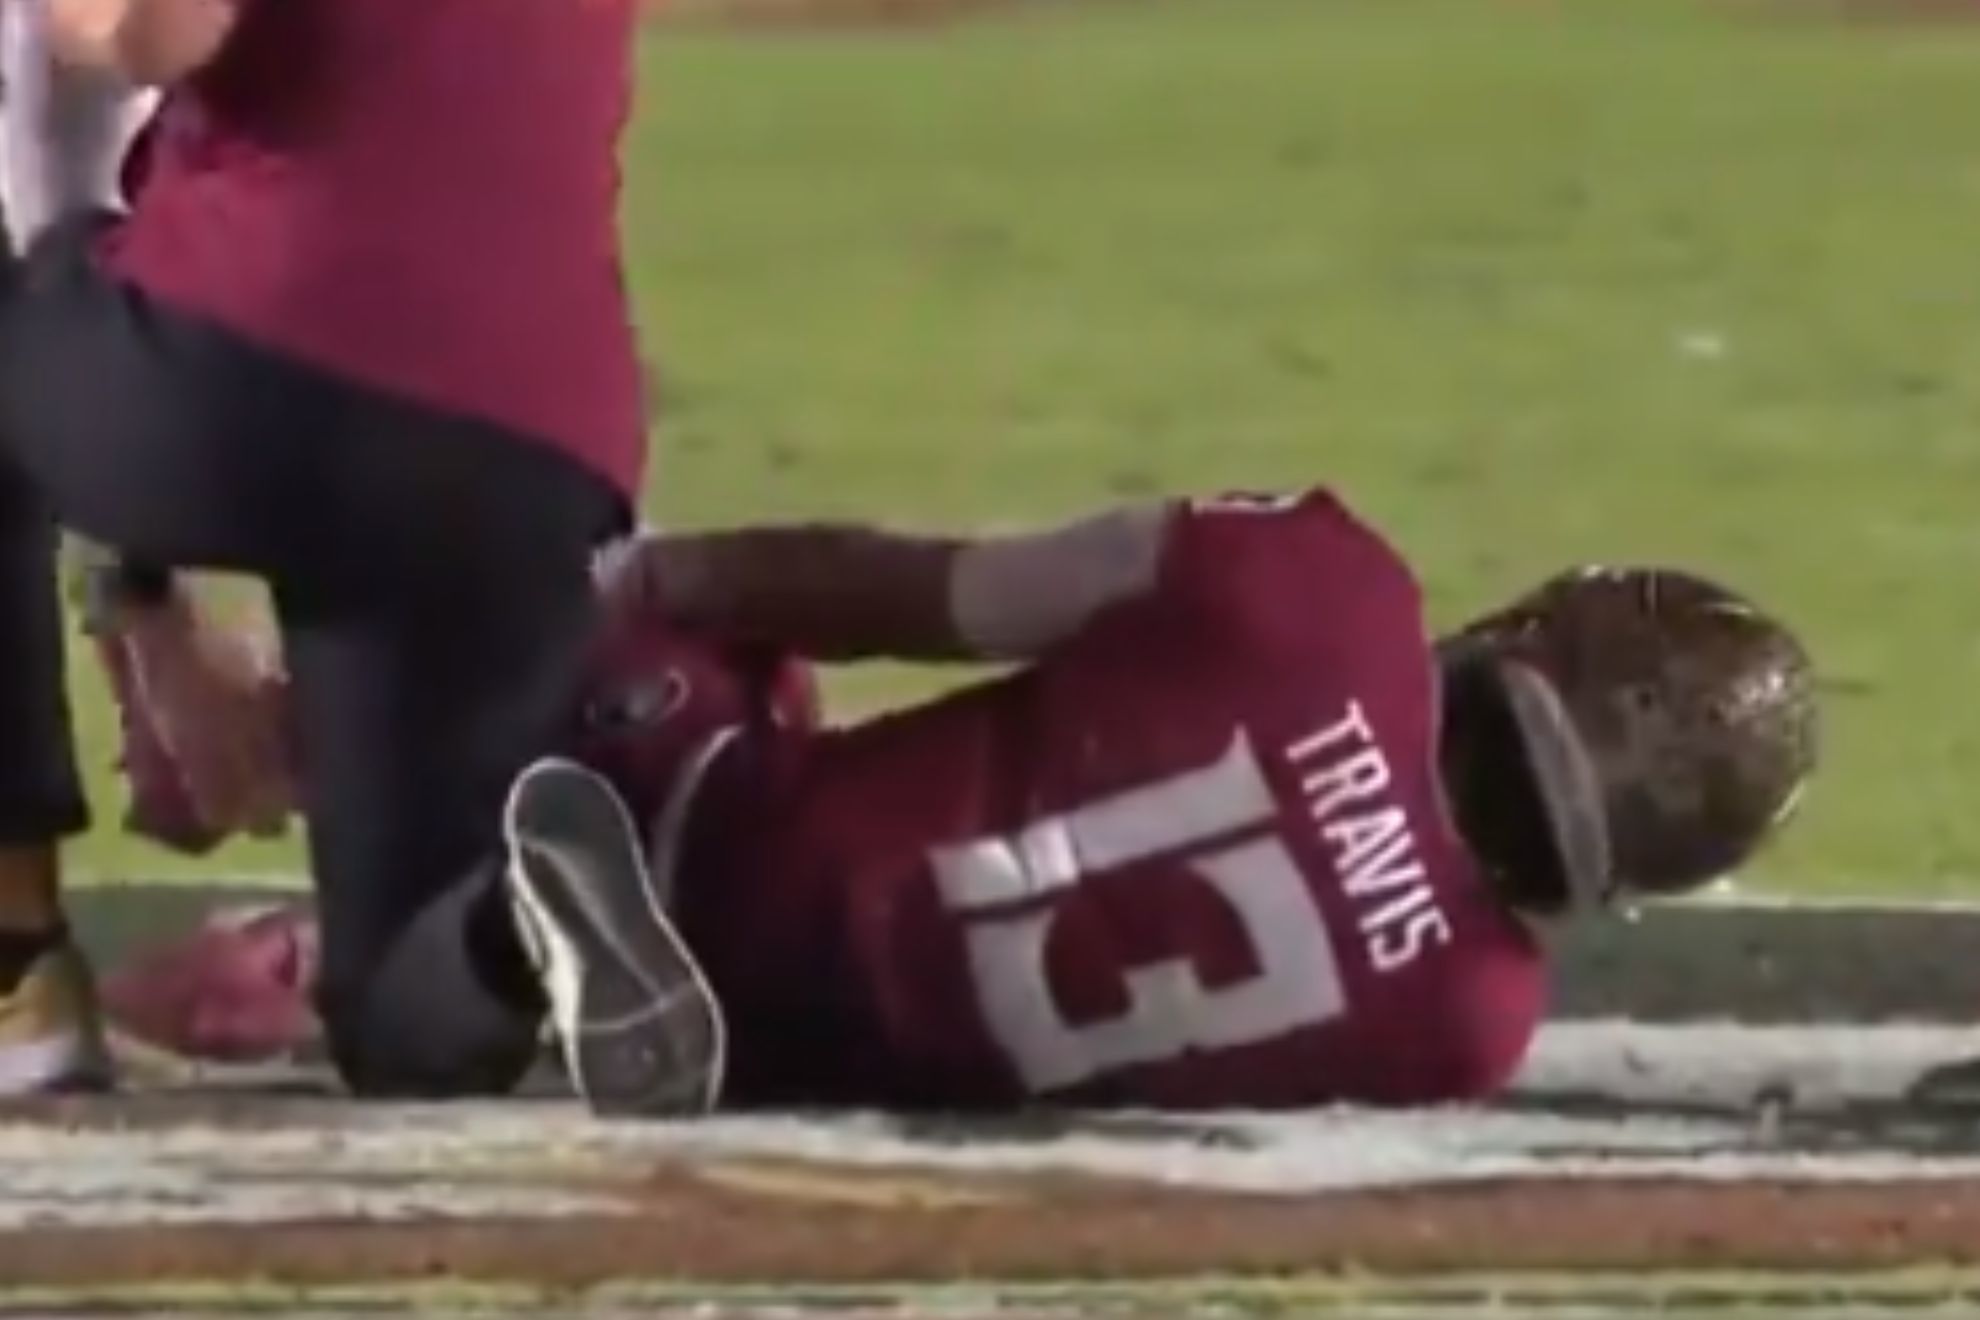 FSU's Jordan Travis breaks his leg in gruesome manner against North Alabama